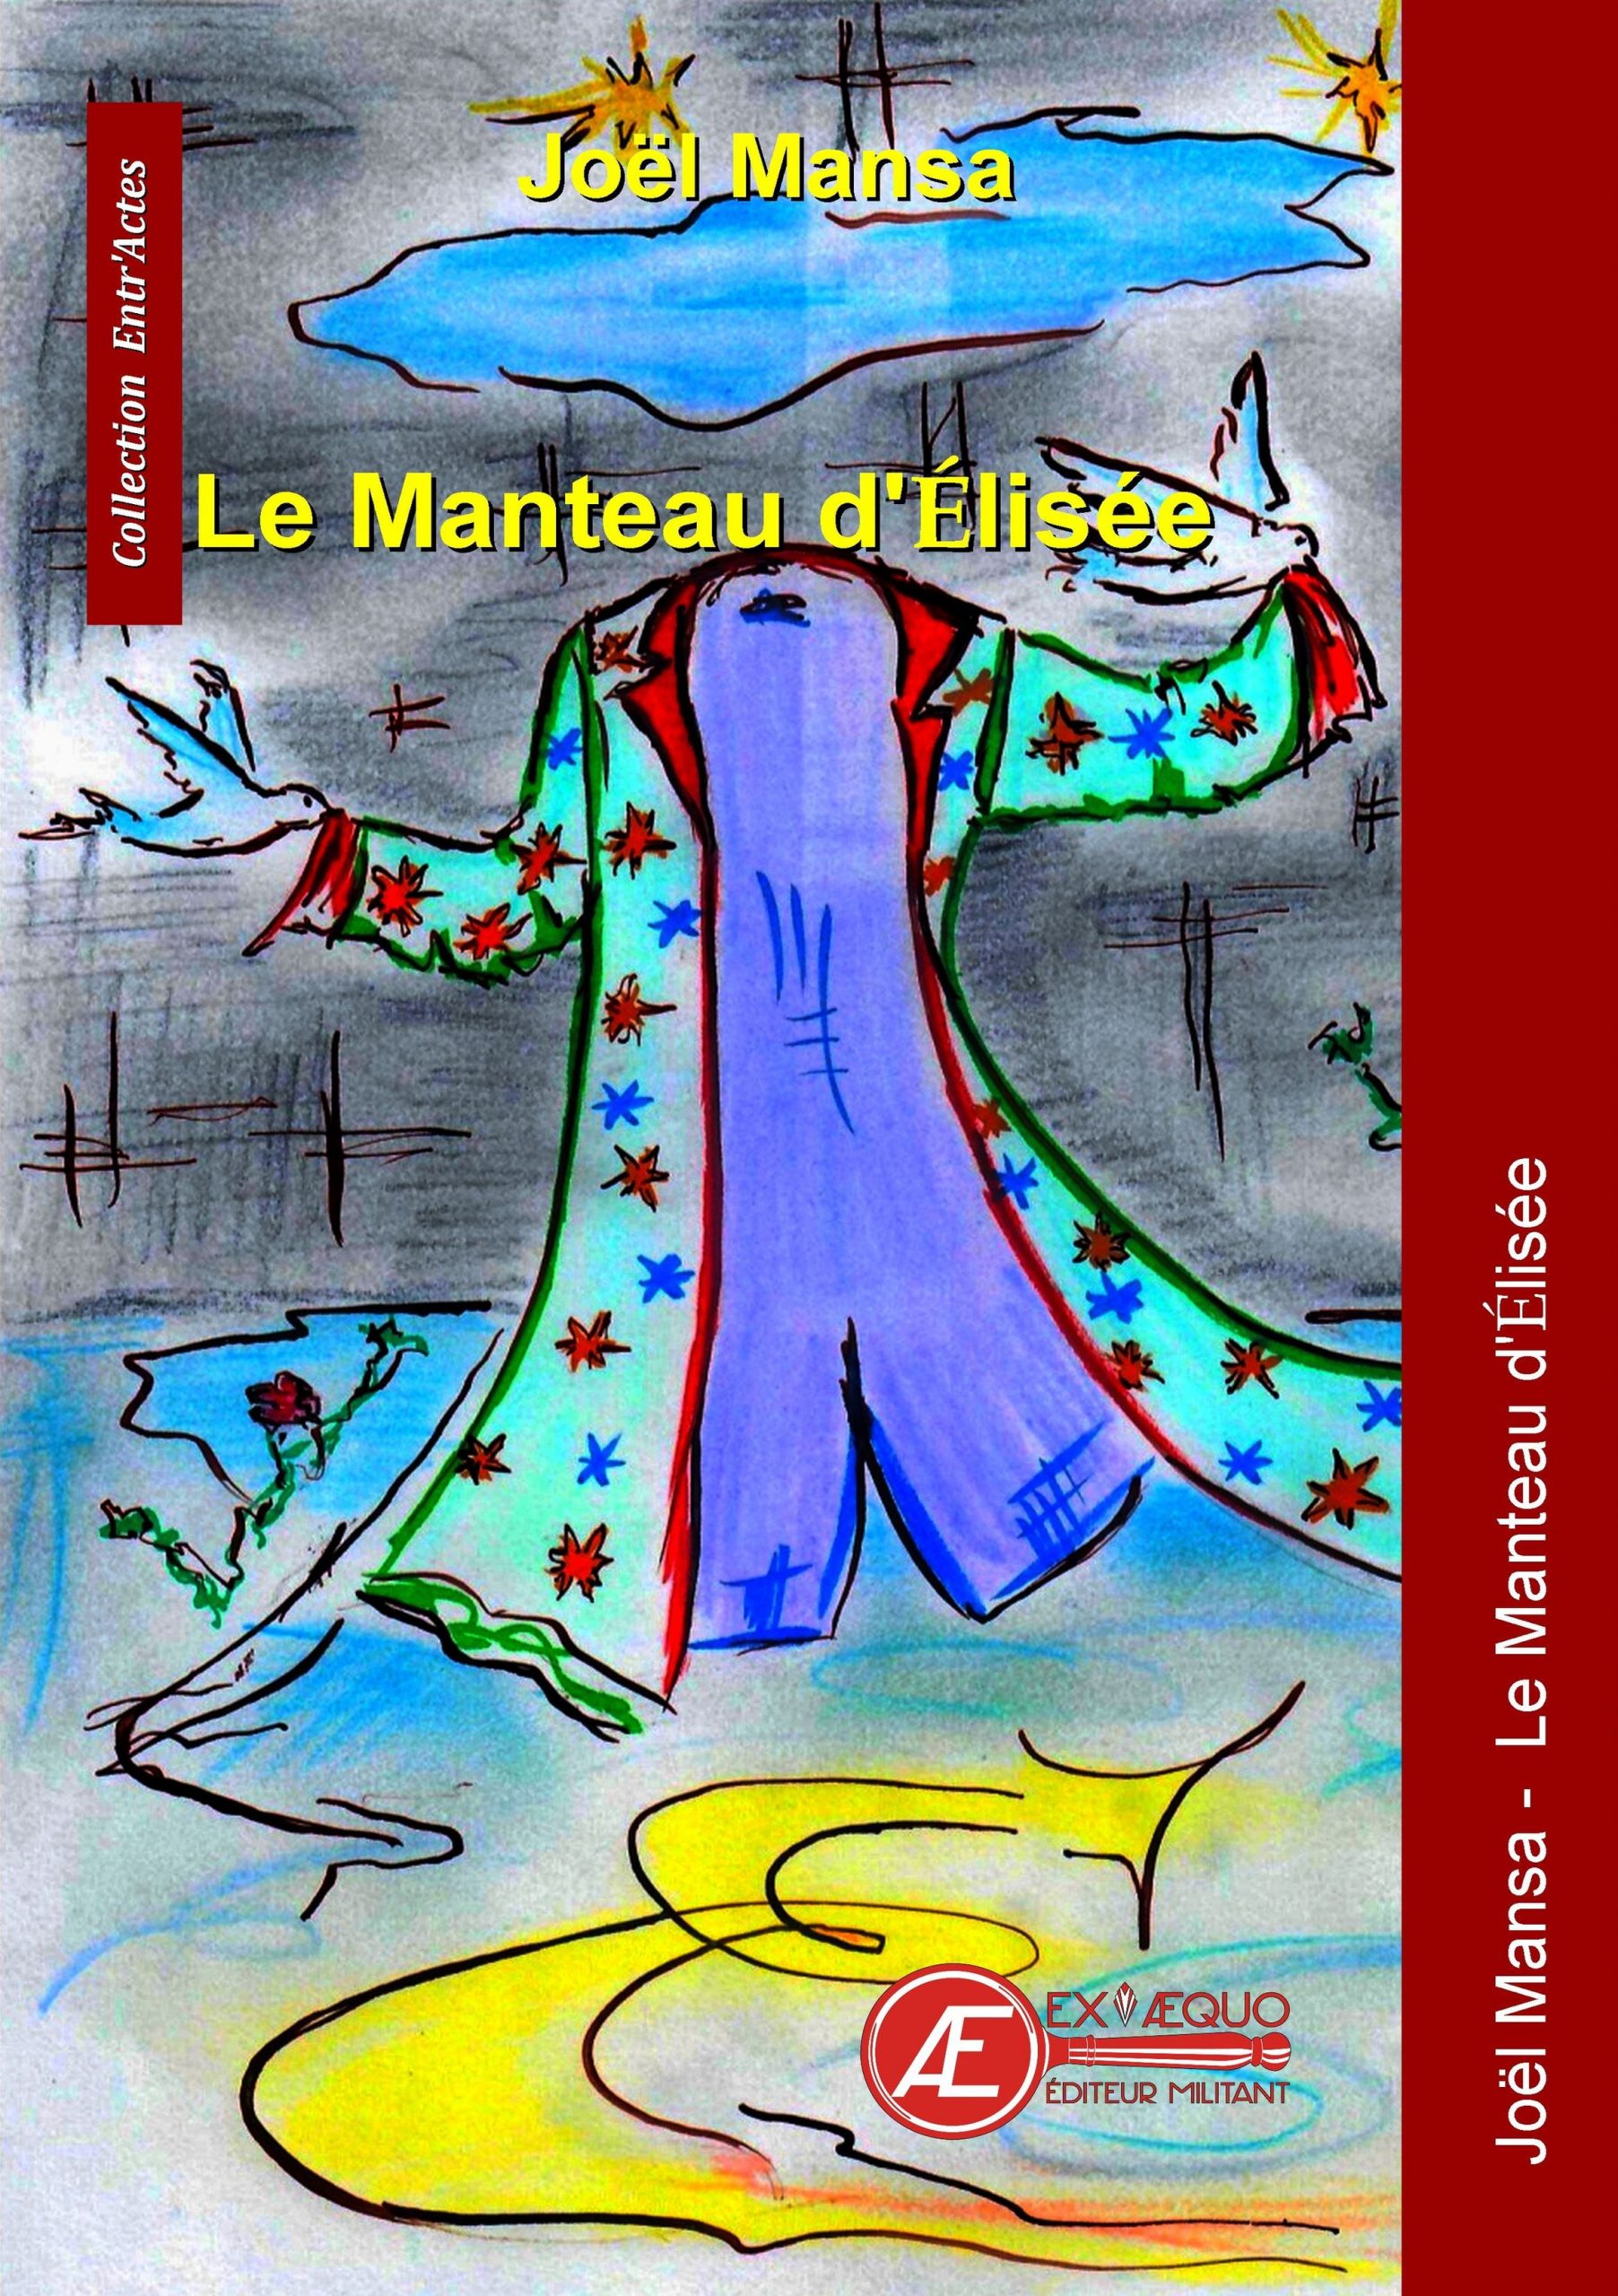 You are currently viewing Le manteau d’Elisée, Joel Mansa